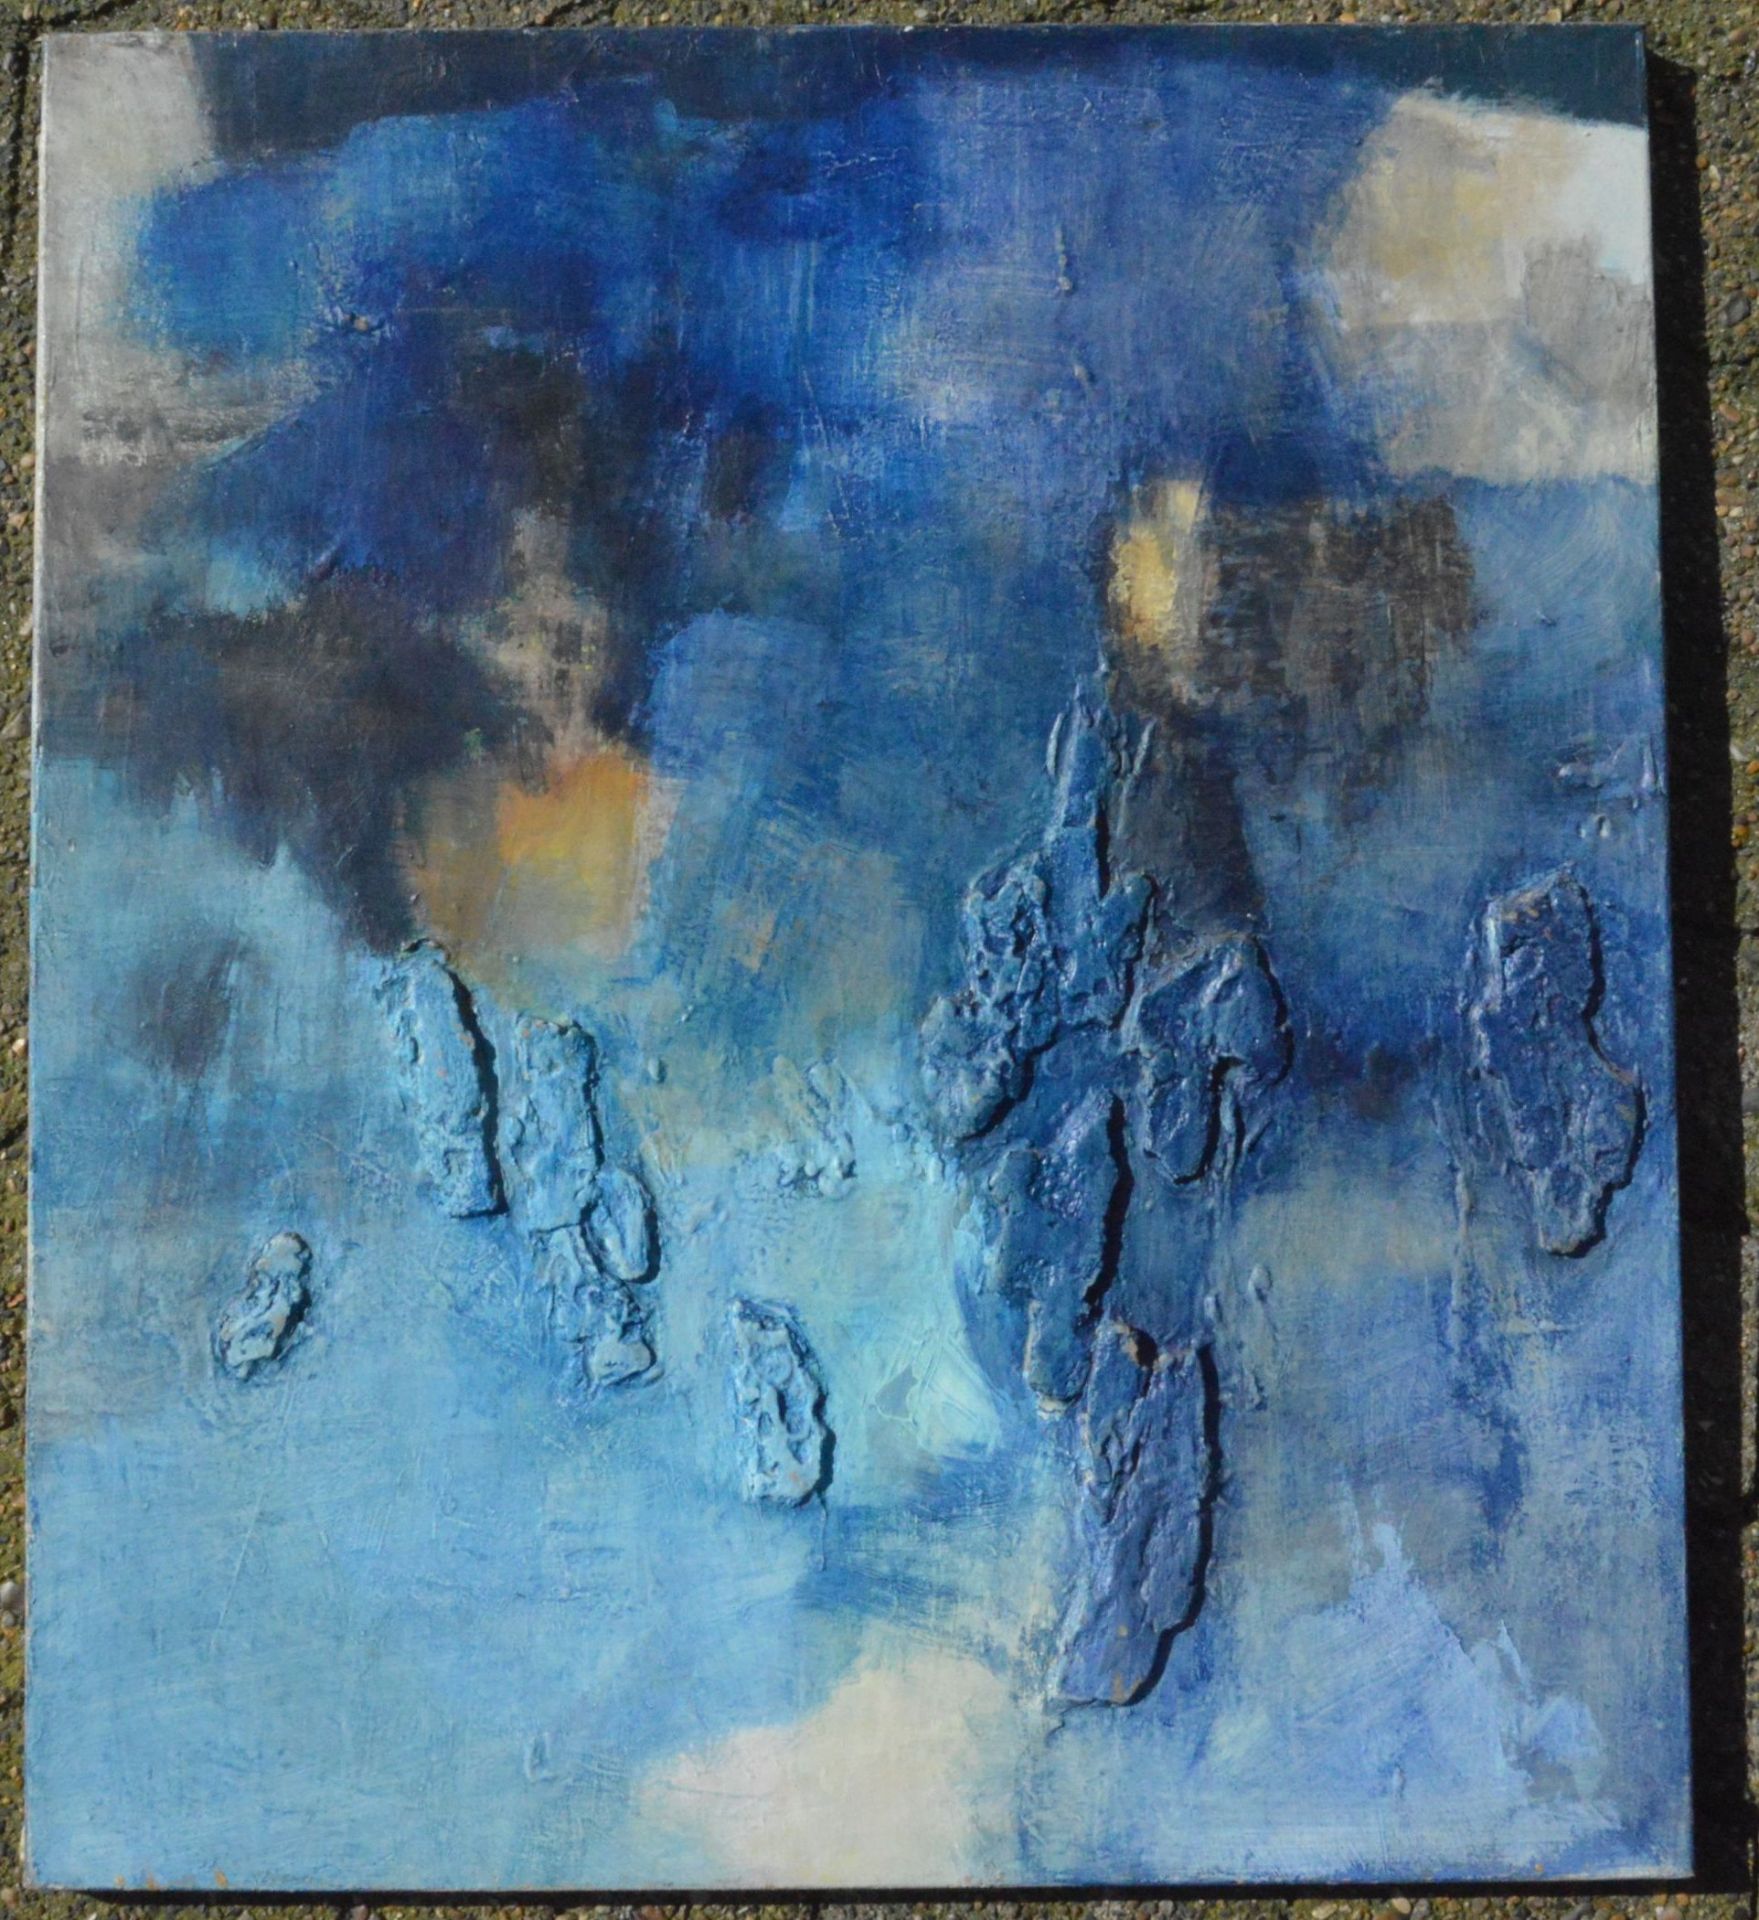 anonymes abstraktes Gemälde in blau, Öl/Leinen, 80x70- - -22.61 % buyer's premium on the hammer